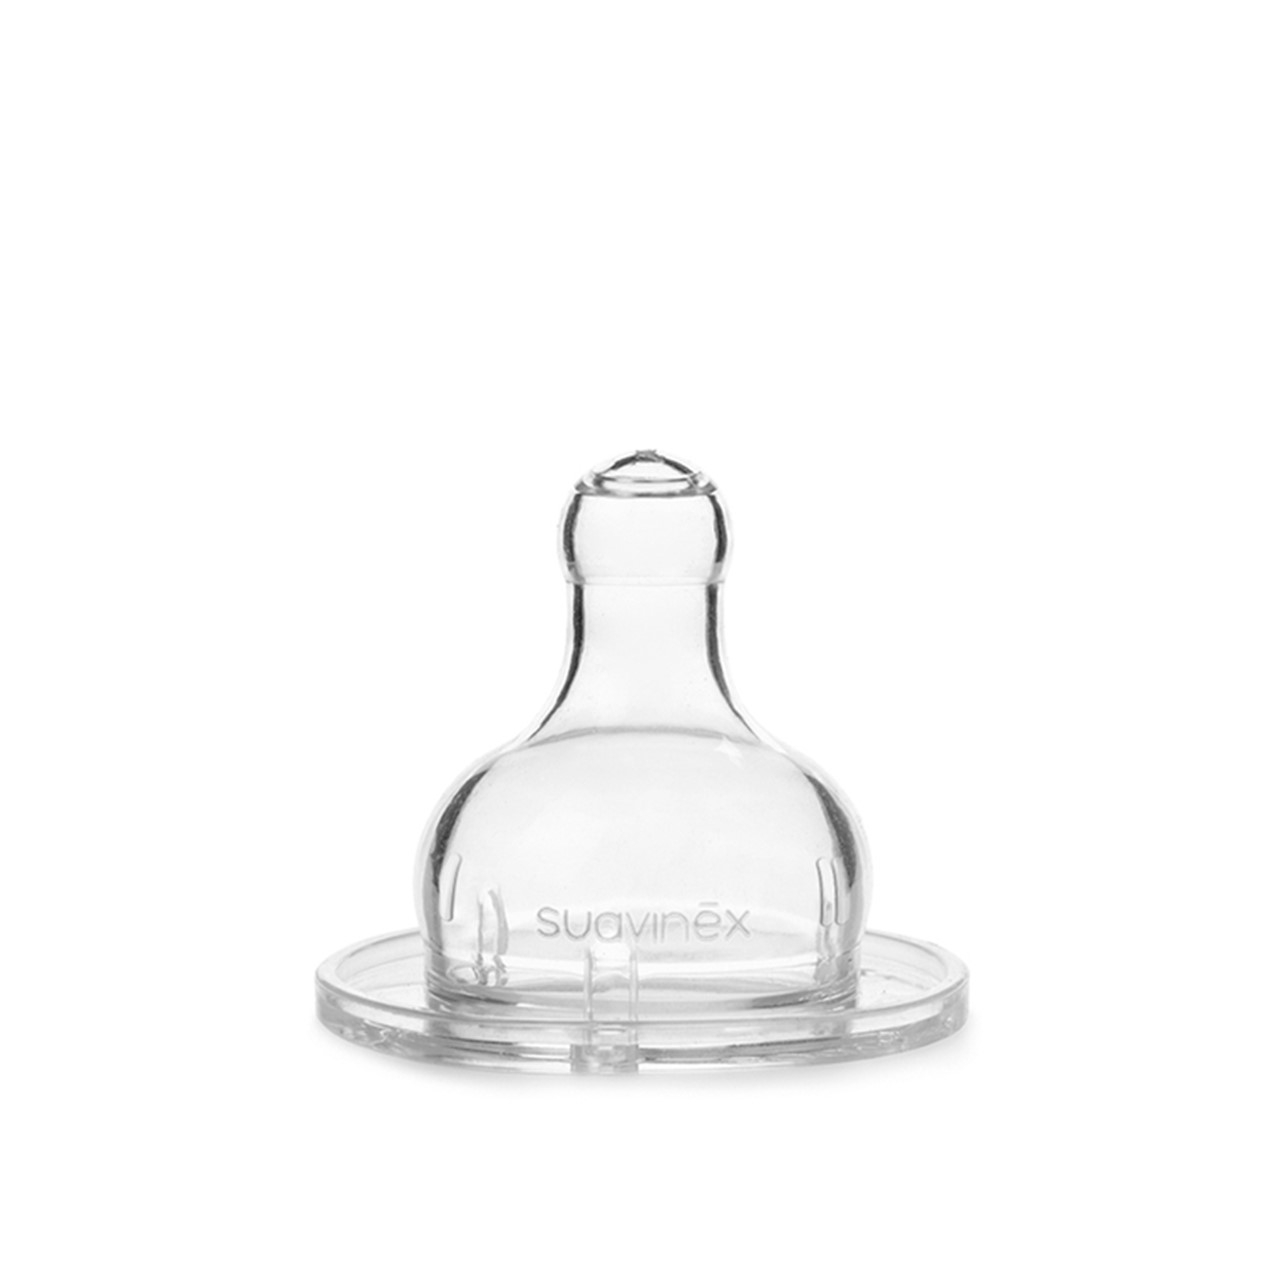 Suavinex Premium Bottle Round Silicone Nipple +4m 360ml x1 (12.17fl oz)